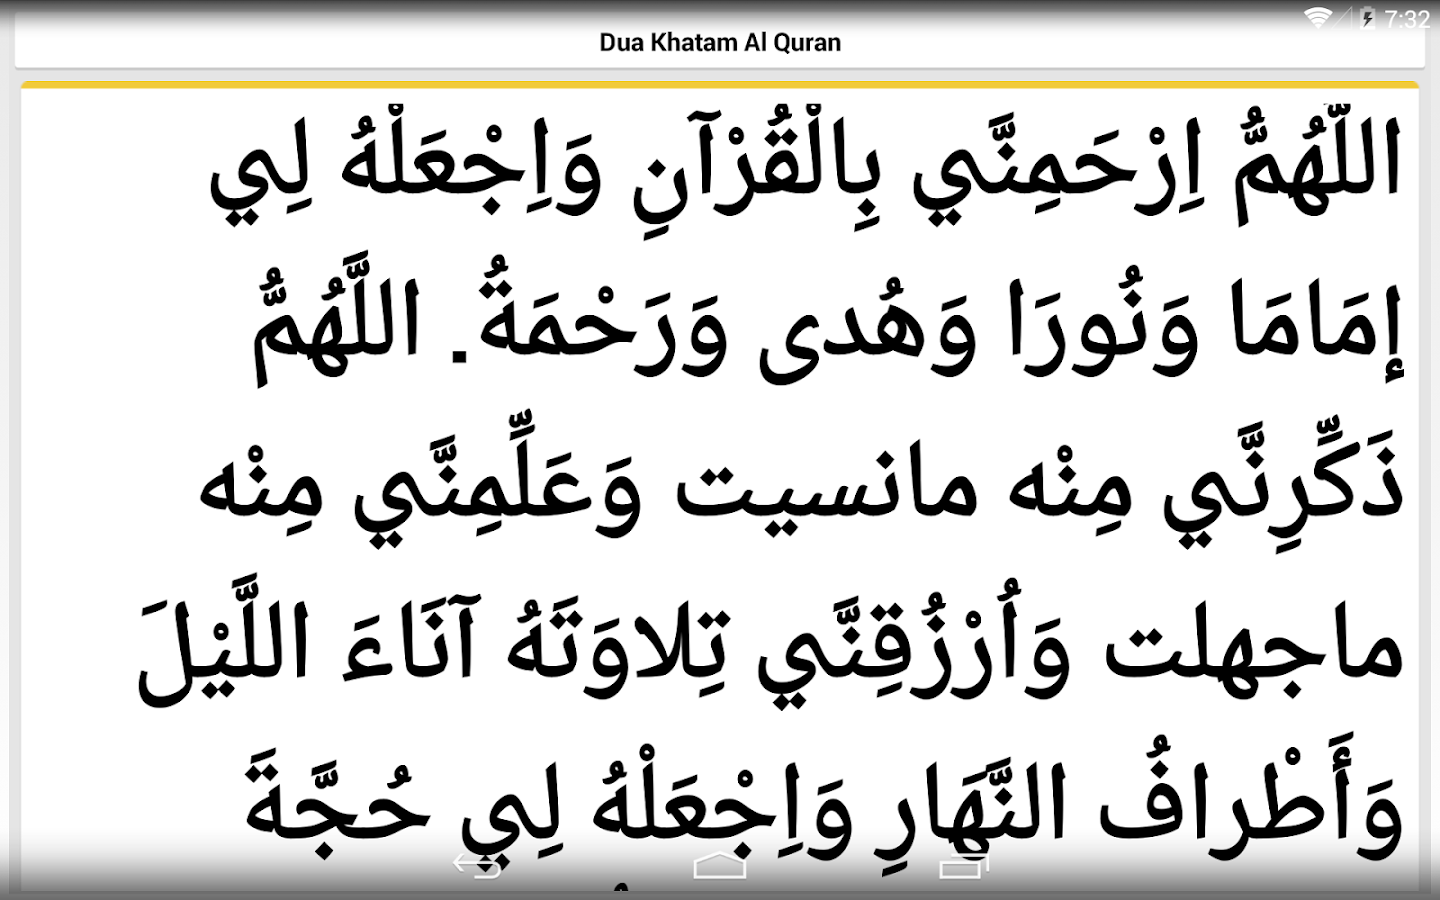 Dua Khatam Quran In English - IMAGESEE